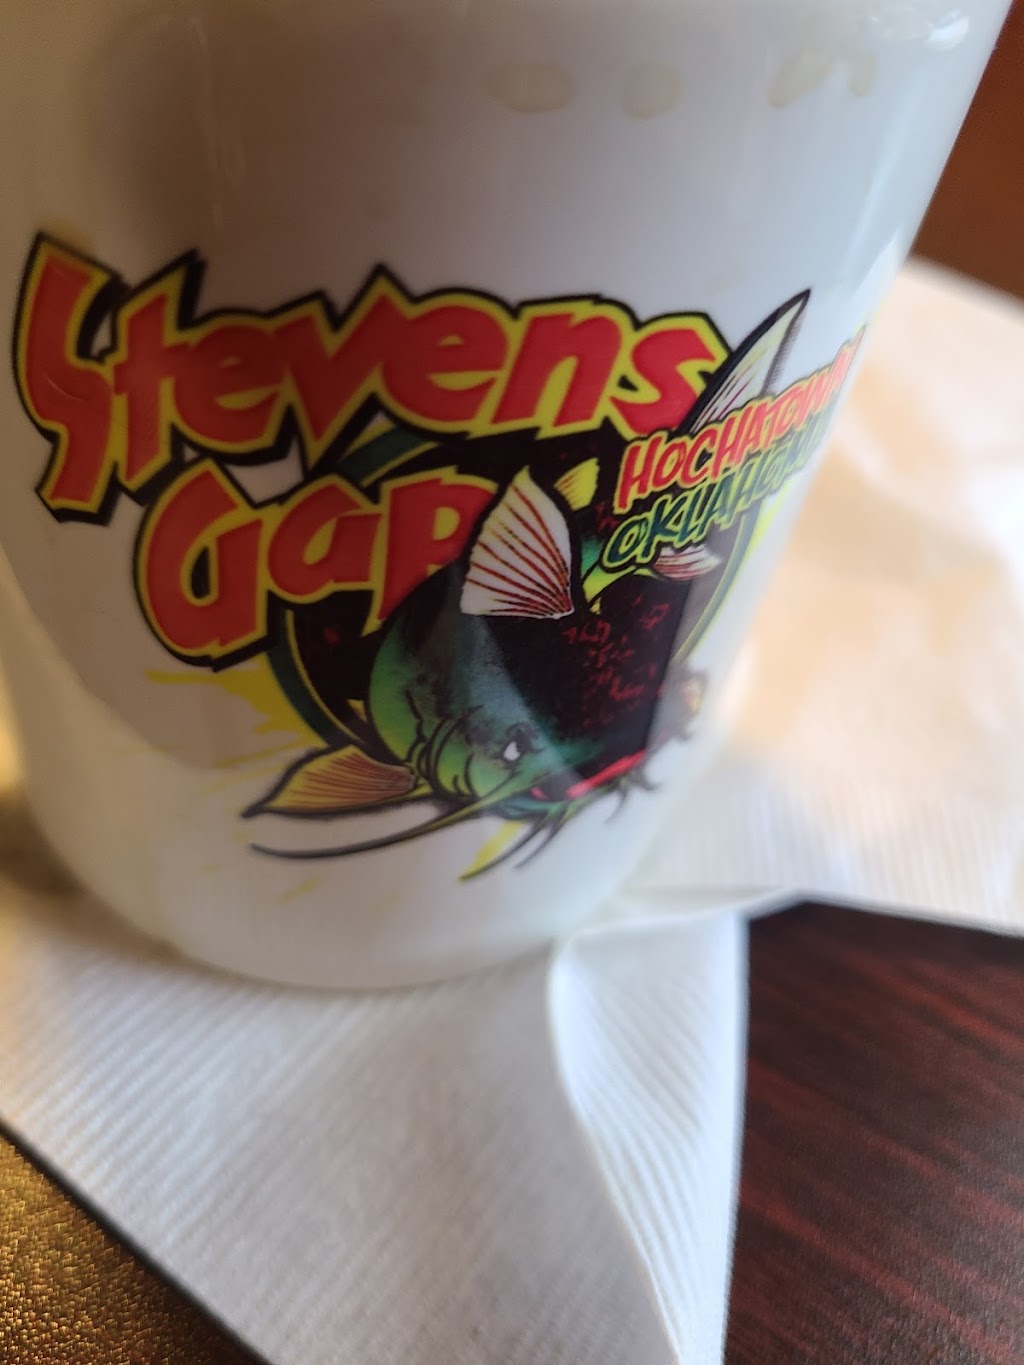 Stevens Gap | restaurant | 9955 US-259, Broken Bow, OK 74728, USA | 5804946350 OR +1 580-494-6350